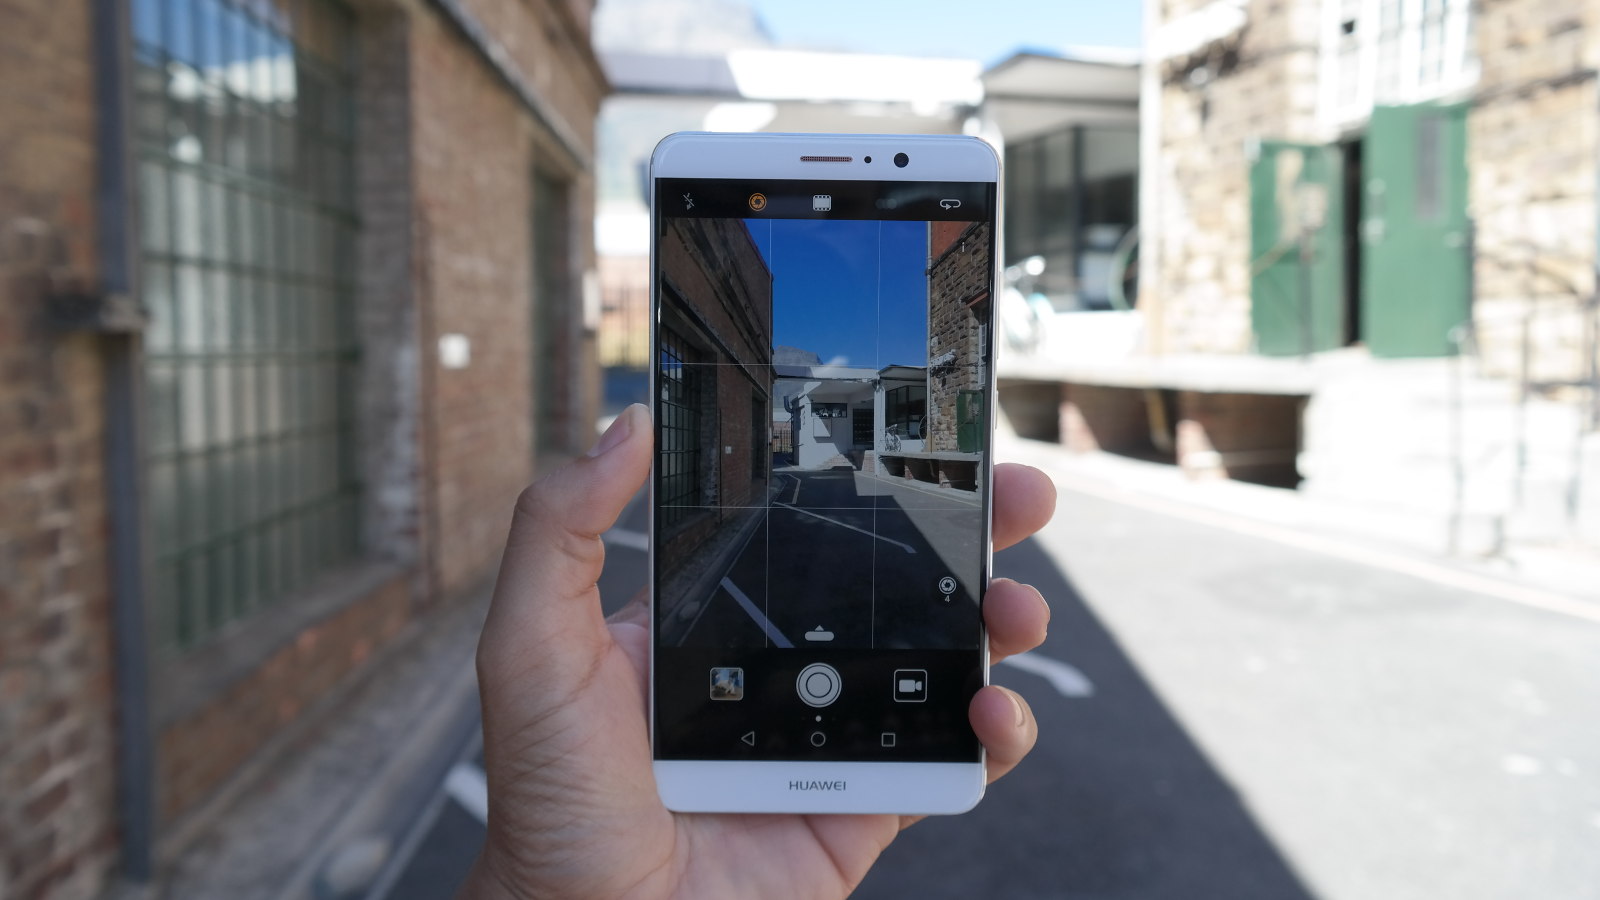 overdrijving een miljoen Leeds Huawei Mate 9 review: the P10 is coming soon - Gearburn